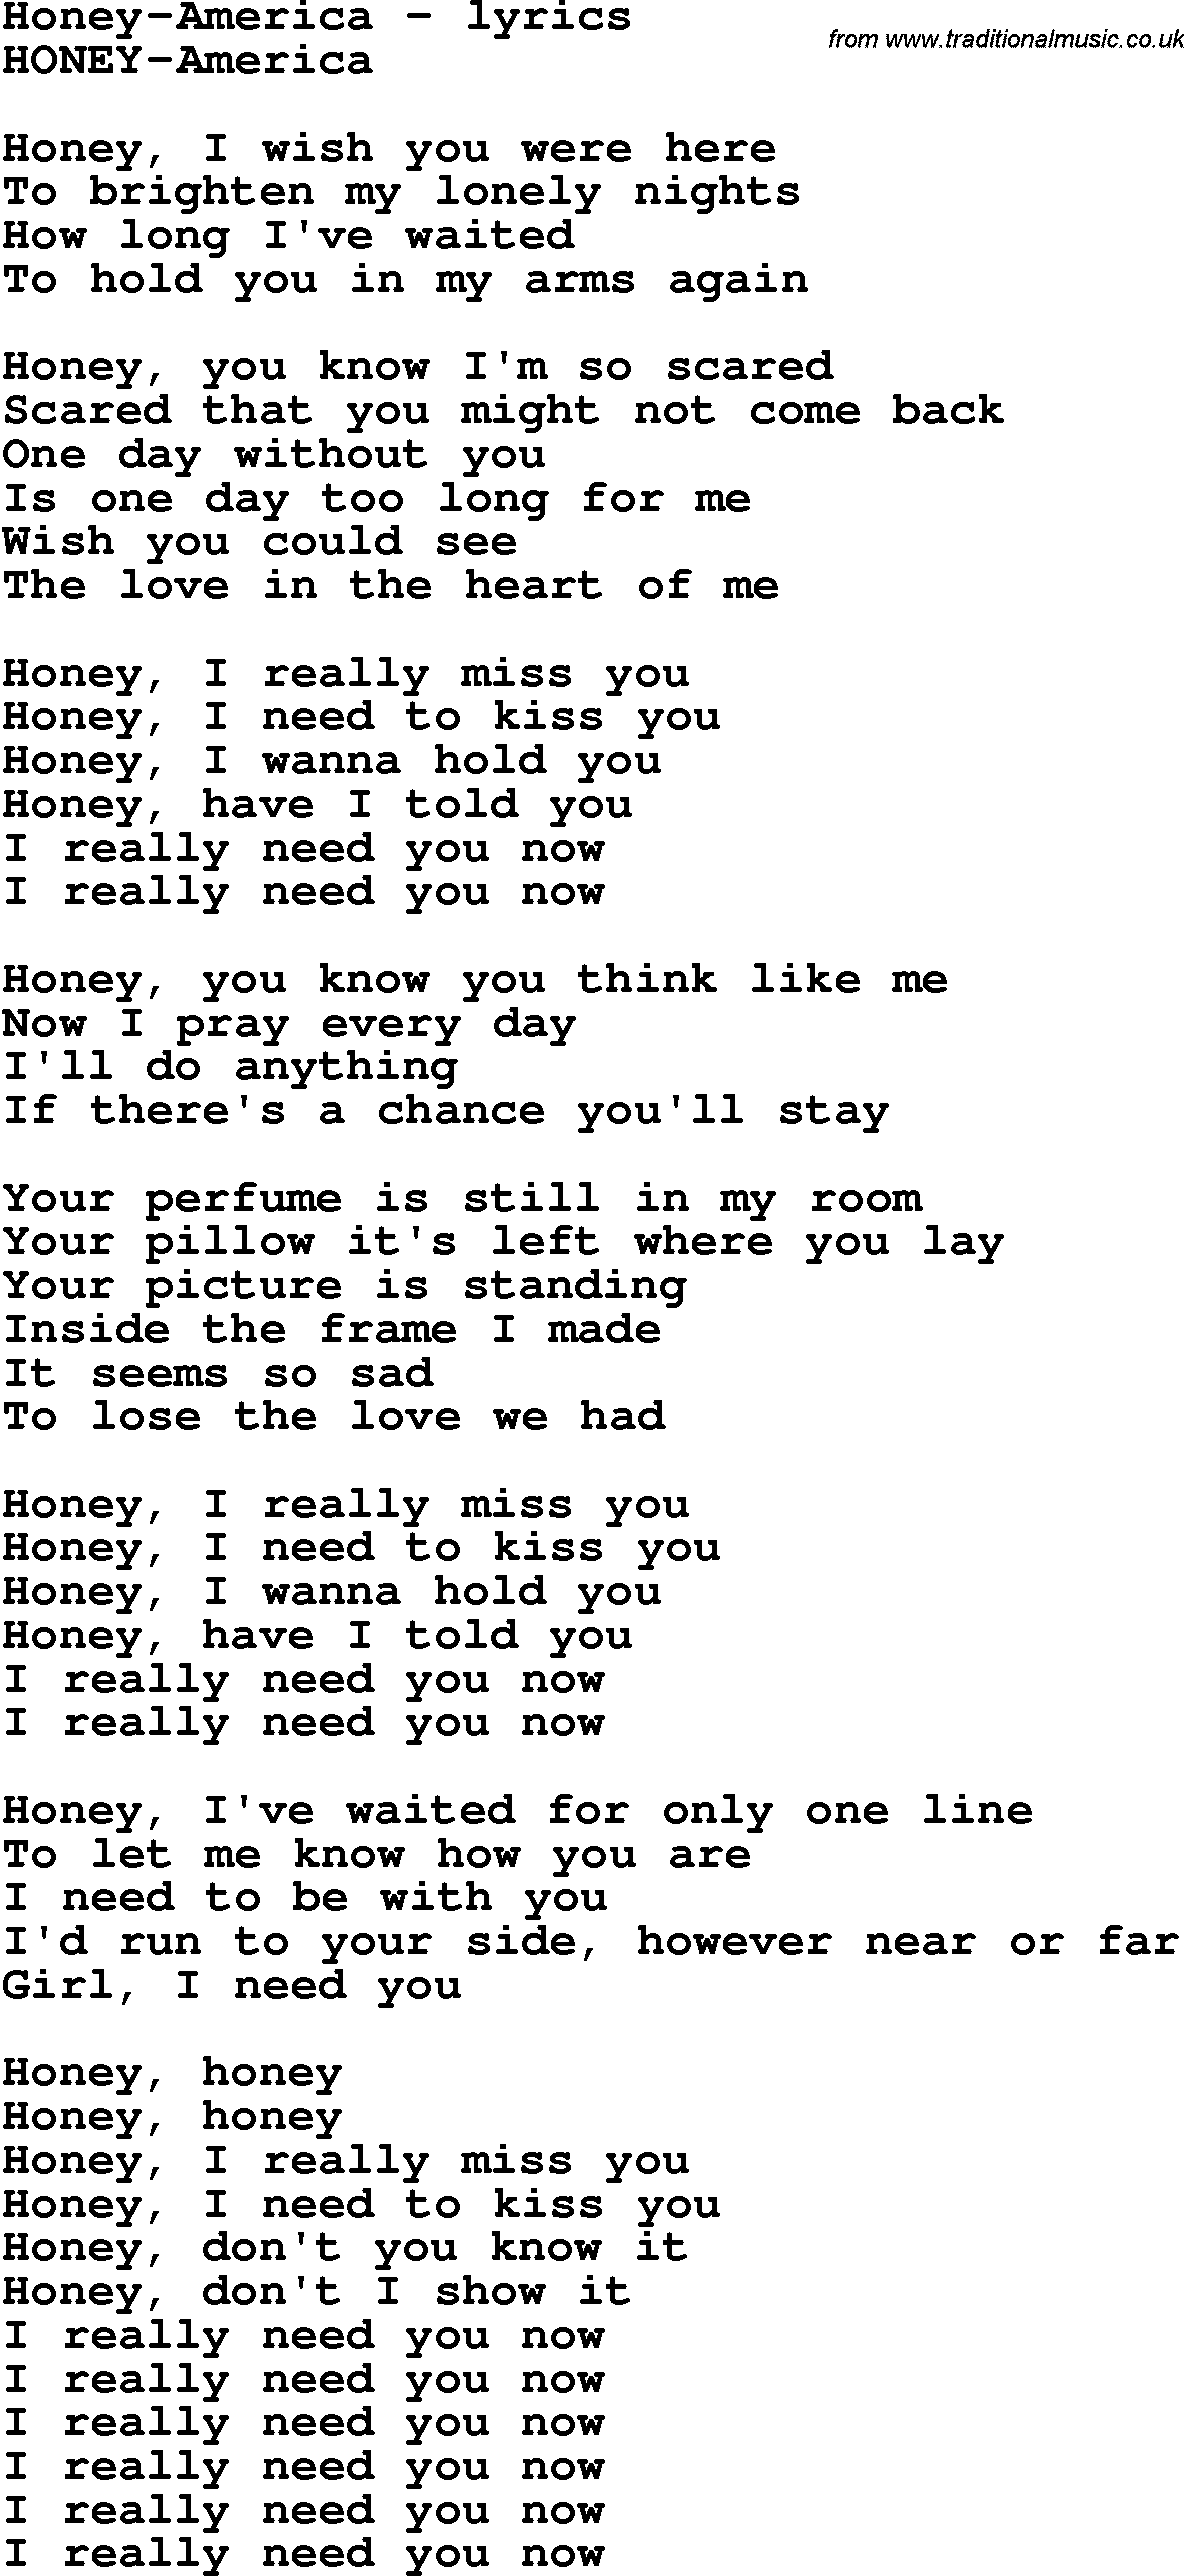 Love Song Lyrics for: Honey-America